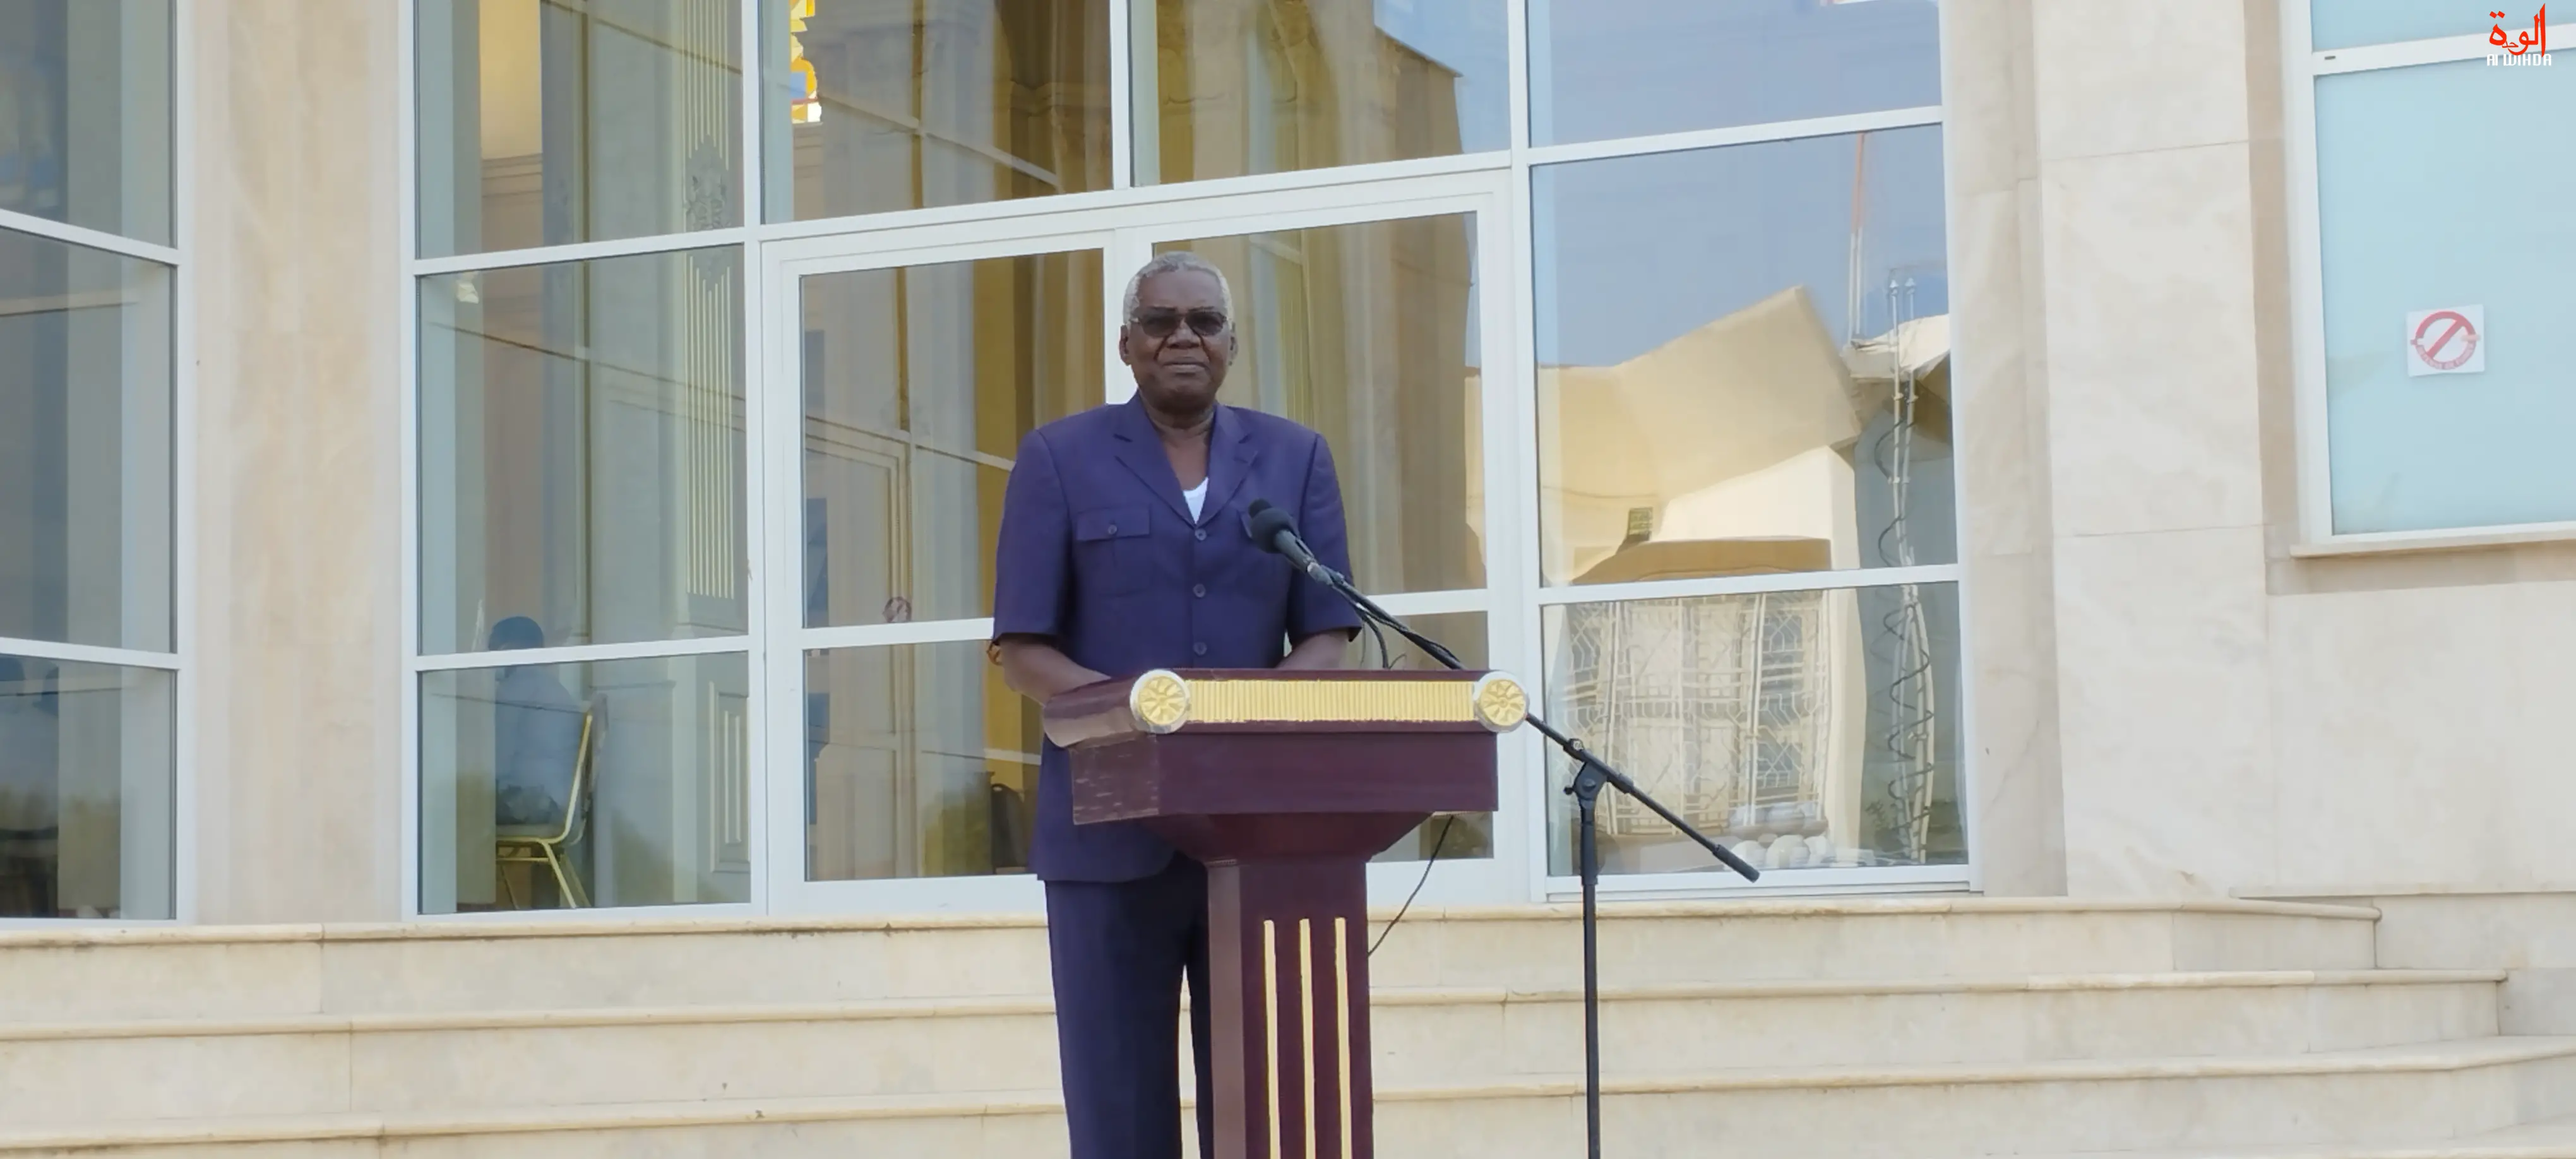 Tchad : les membres du gouvernement qui ne sont pas reconduits